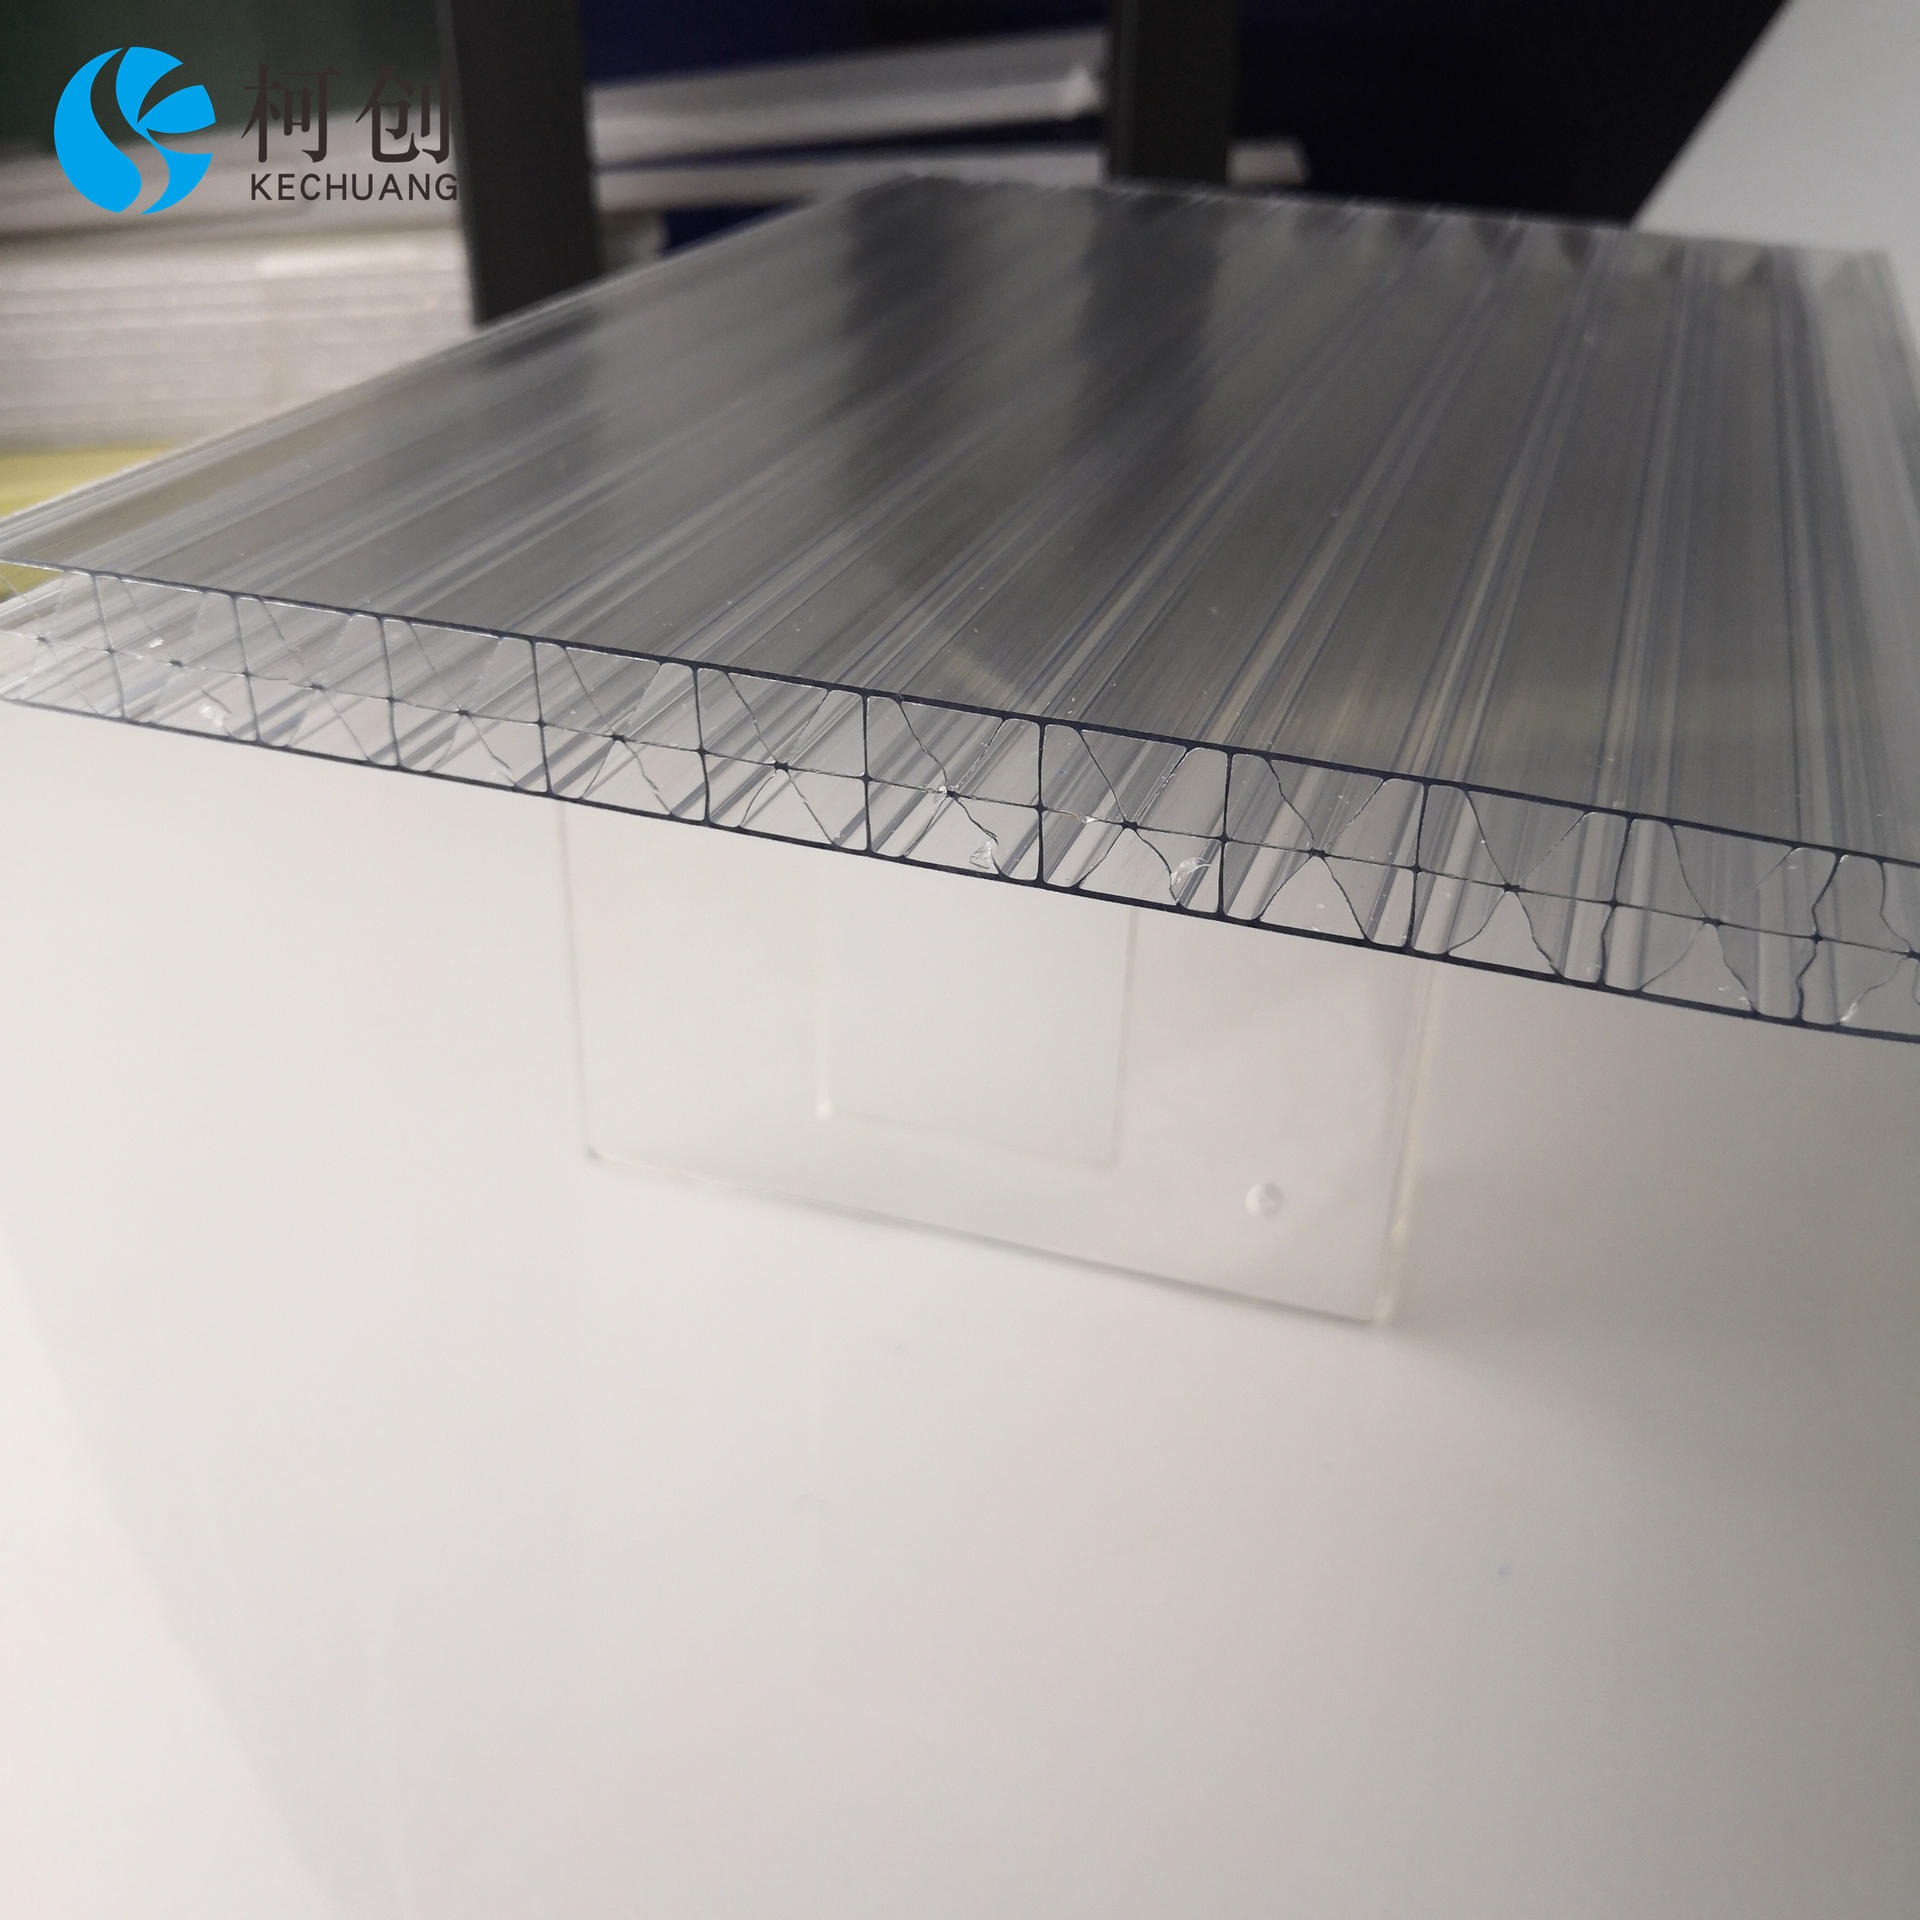 柯创厂家批发透明PC中空阳光板 隔离防护板办公隔断板车雨棚pc米字格板威海定制